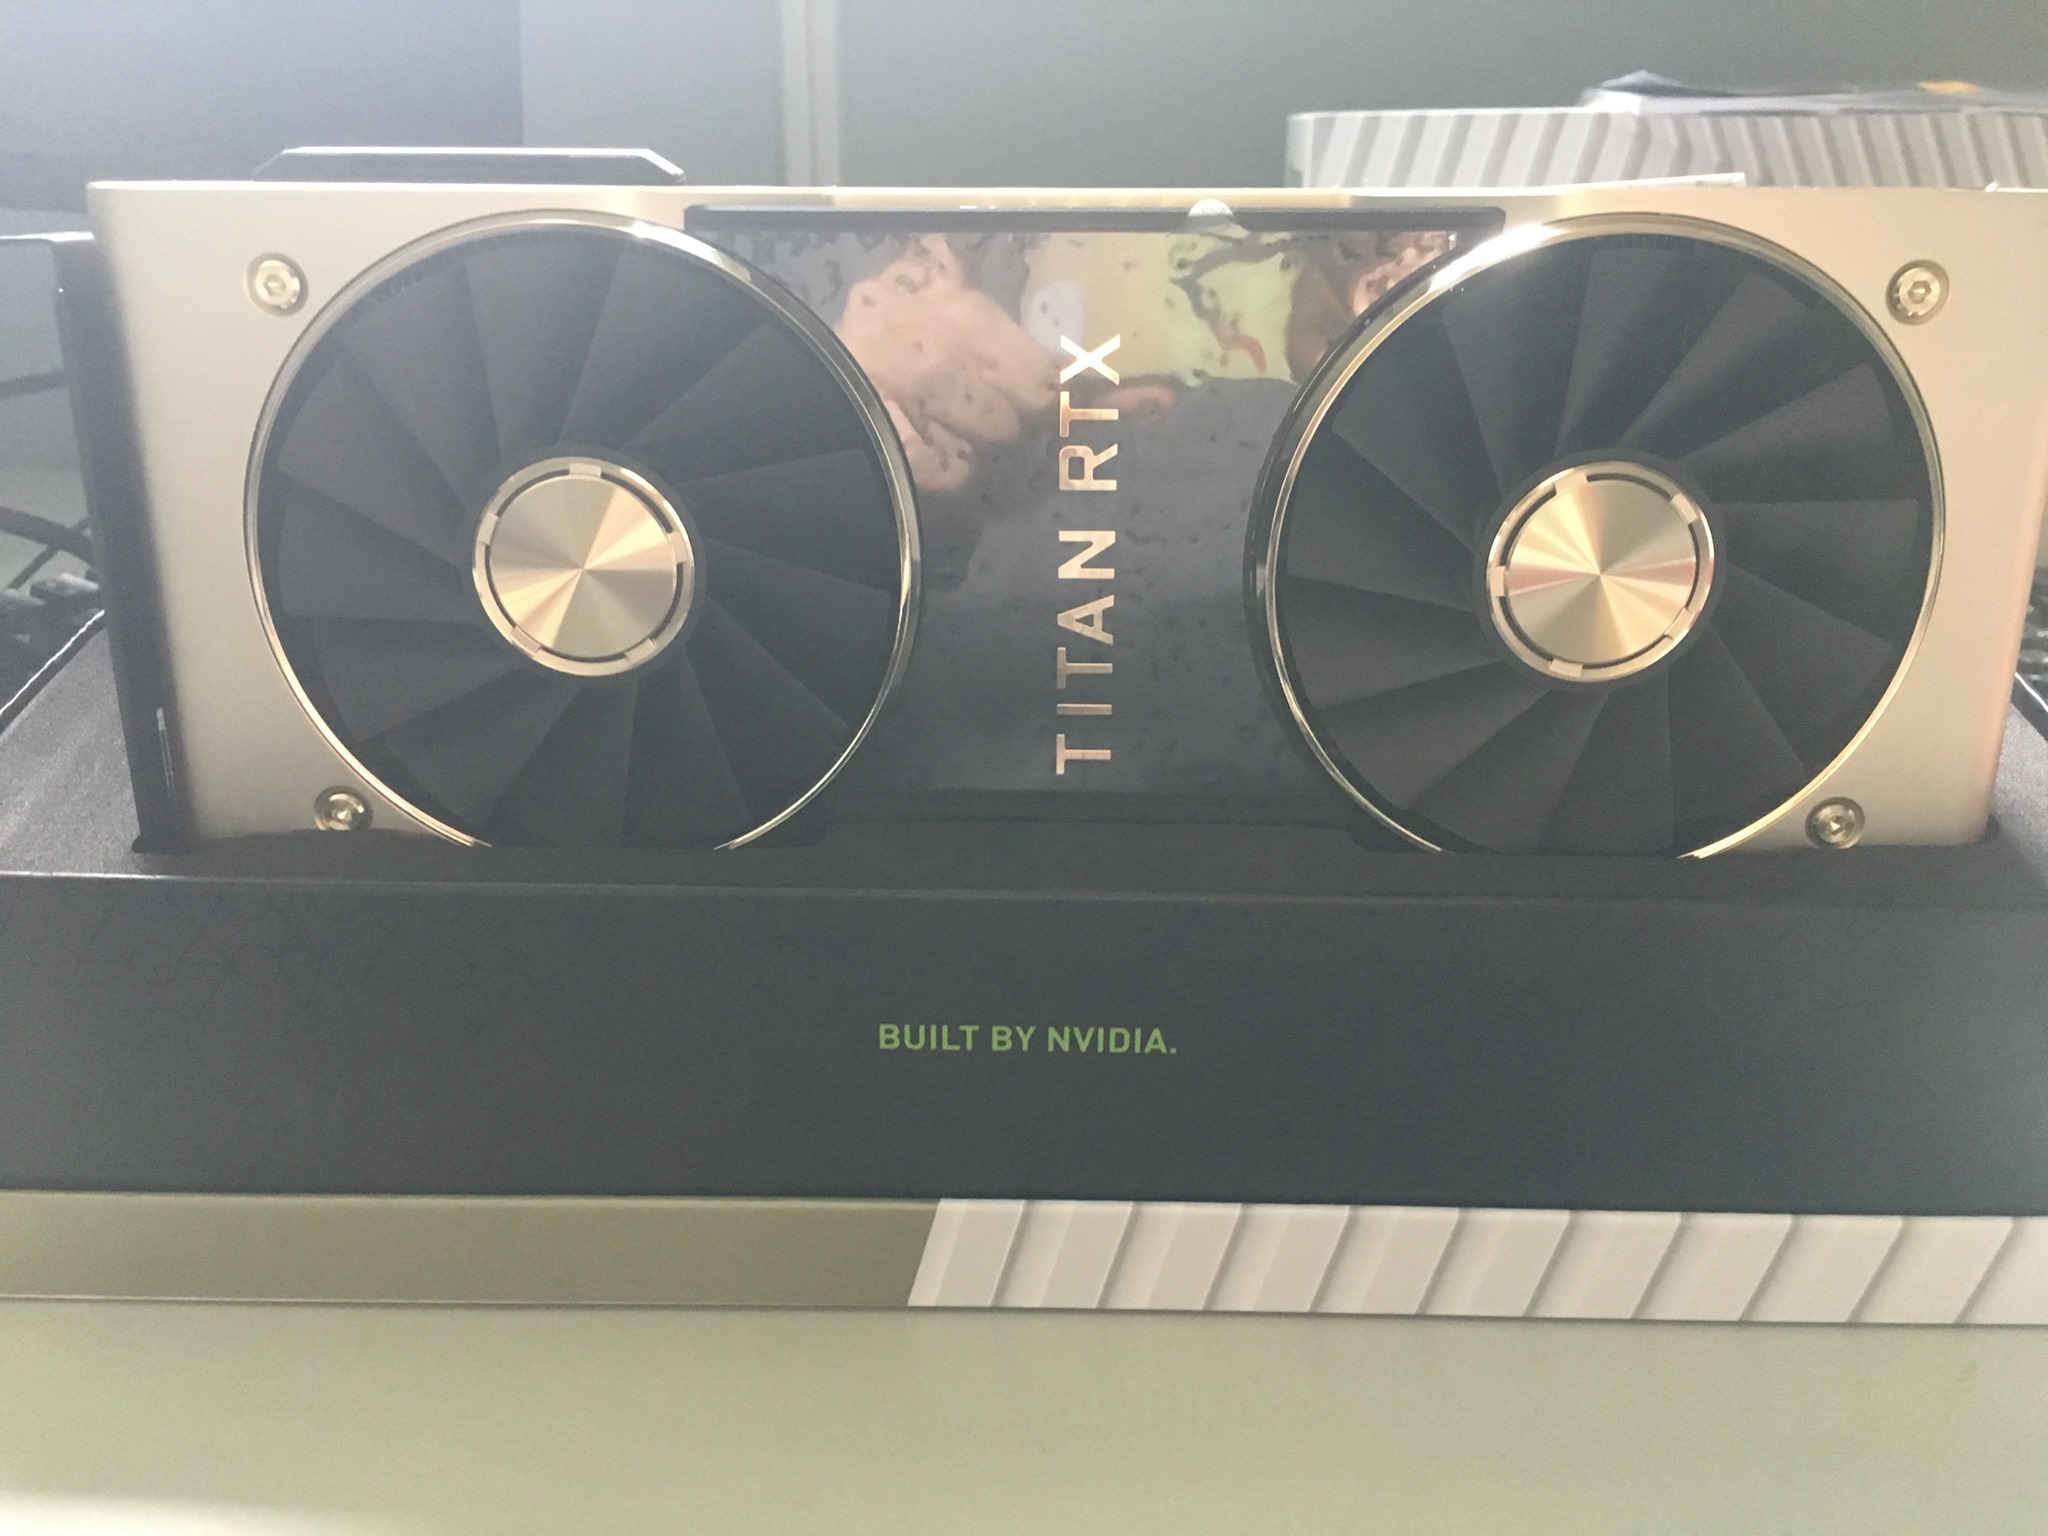 1 trong 2 cái GPU sensei mua cho bạn cùng lab.